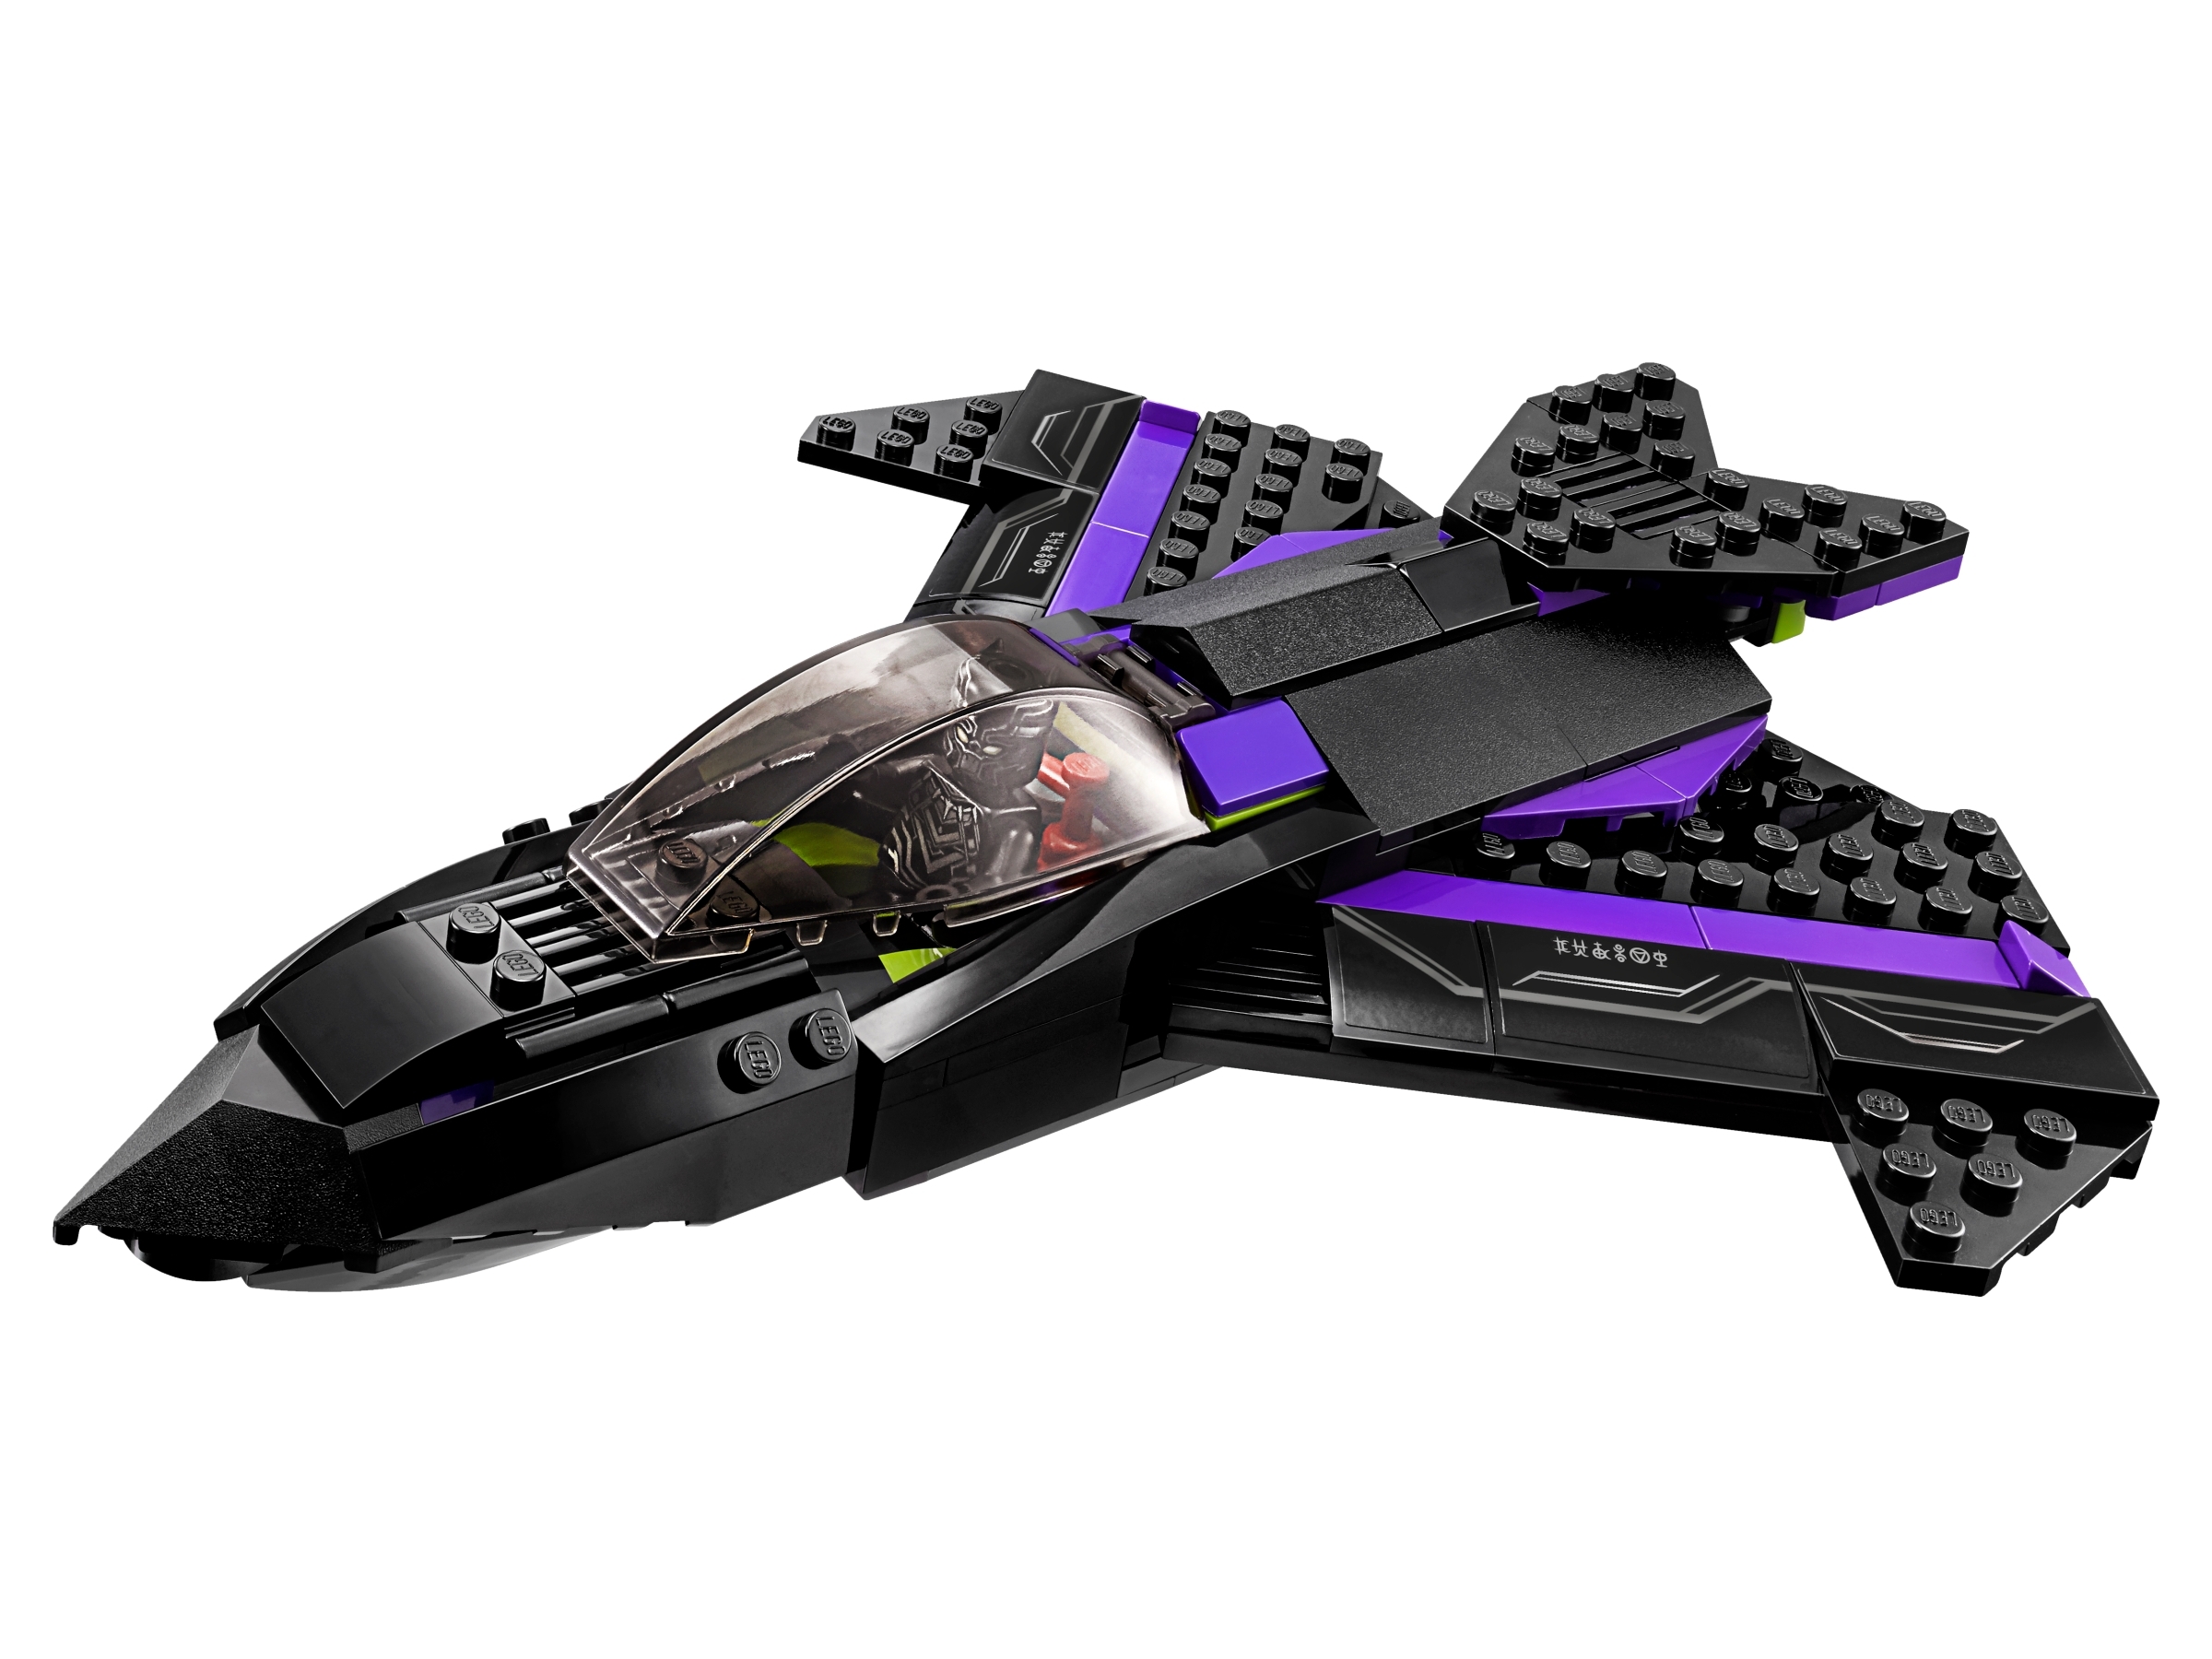 black panther ship lego